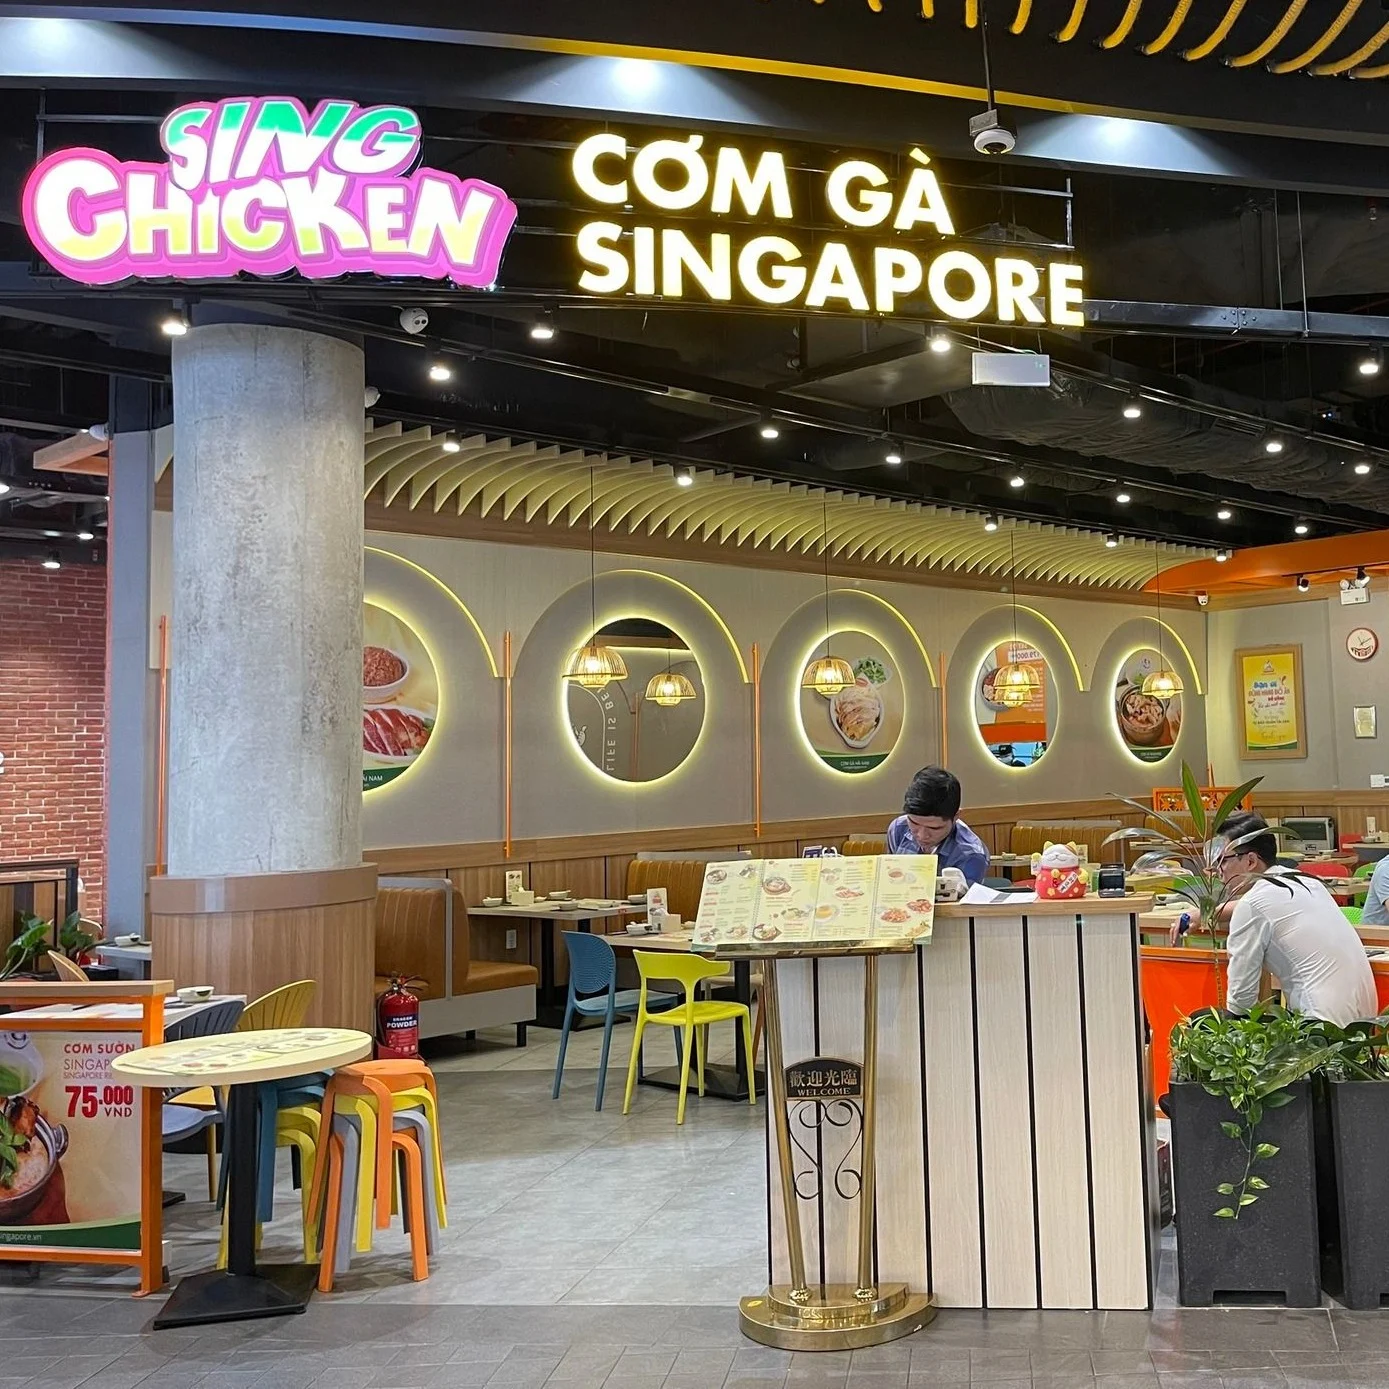  Nhà hàng Cơm gà Singapore với thương hiệu lâu đời